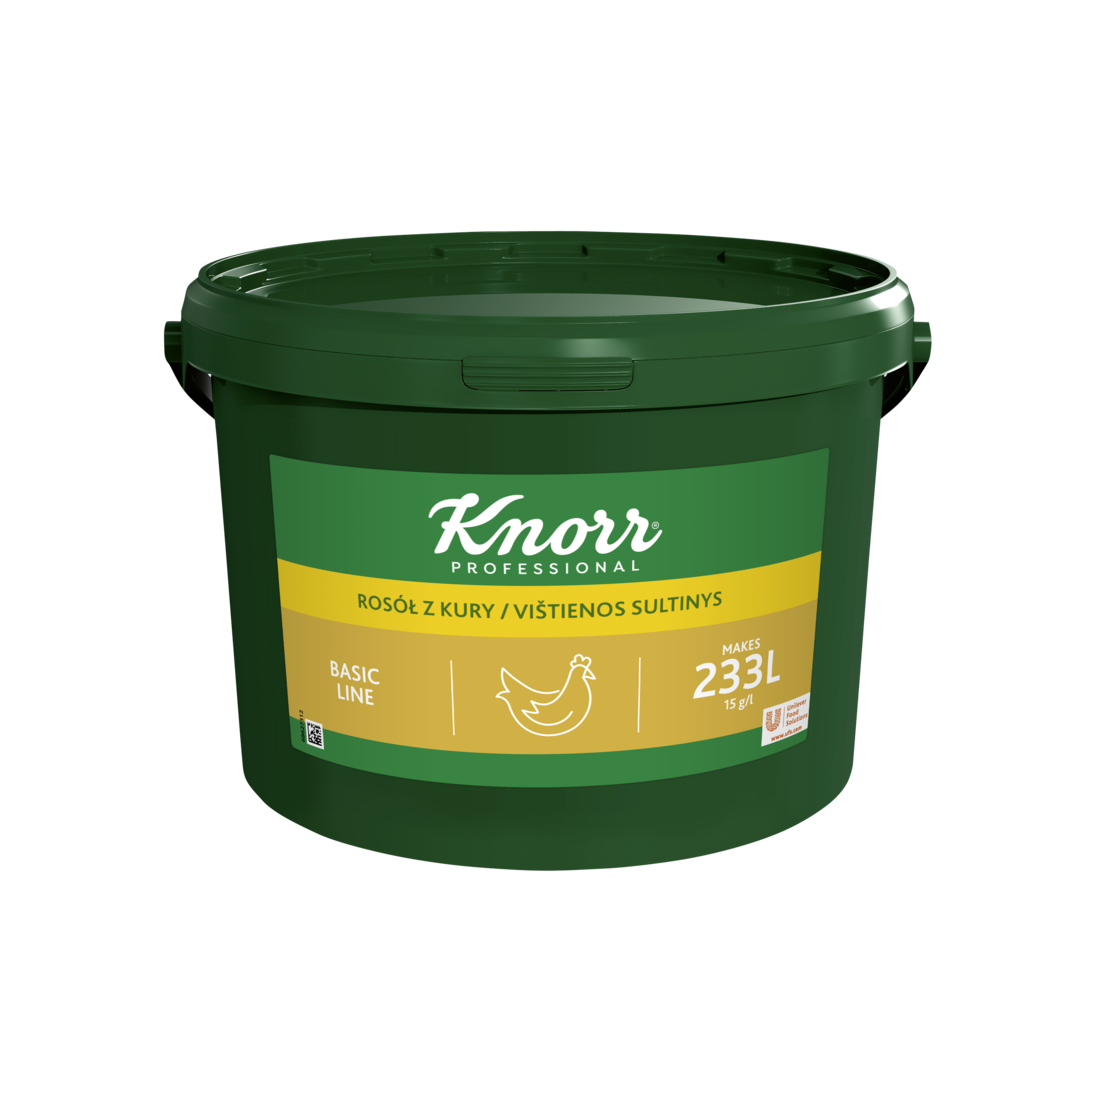 Knorr 1-2-3 Vištienos Sultinio Pagrindas 3,5 kg - 